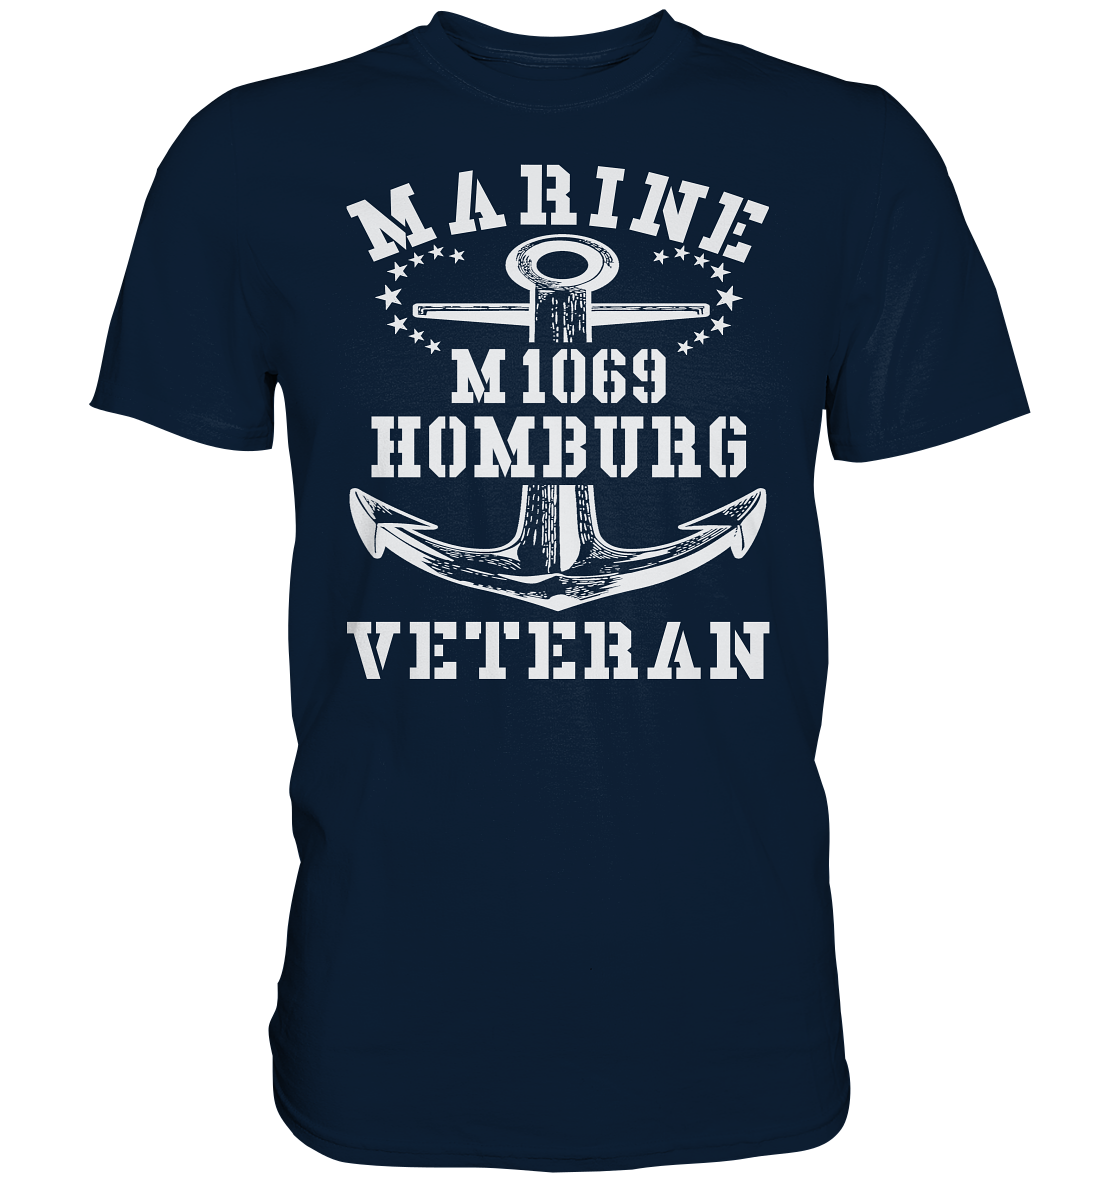 Mij.-Boot M1069 HOMBURG Marine Veteran - Premium Shirt